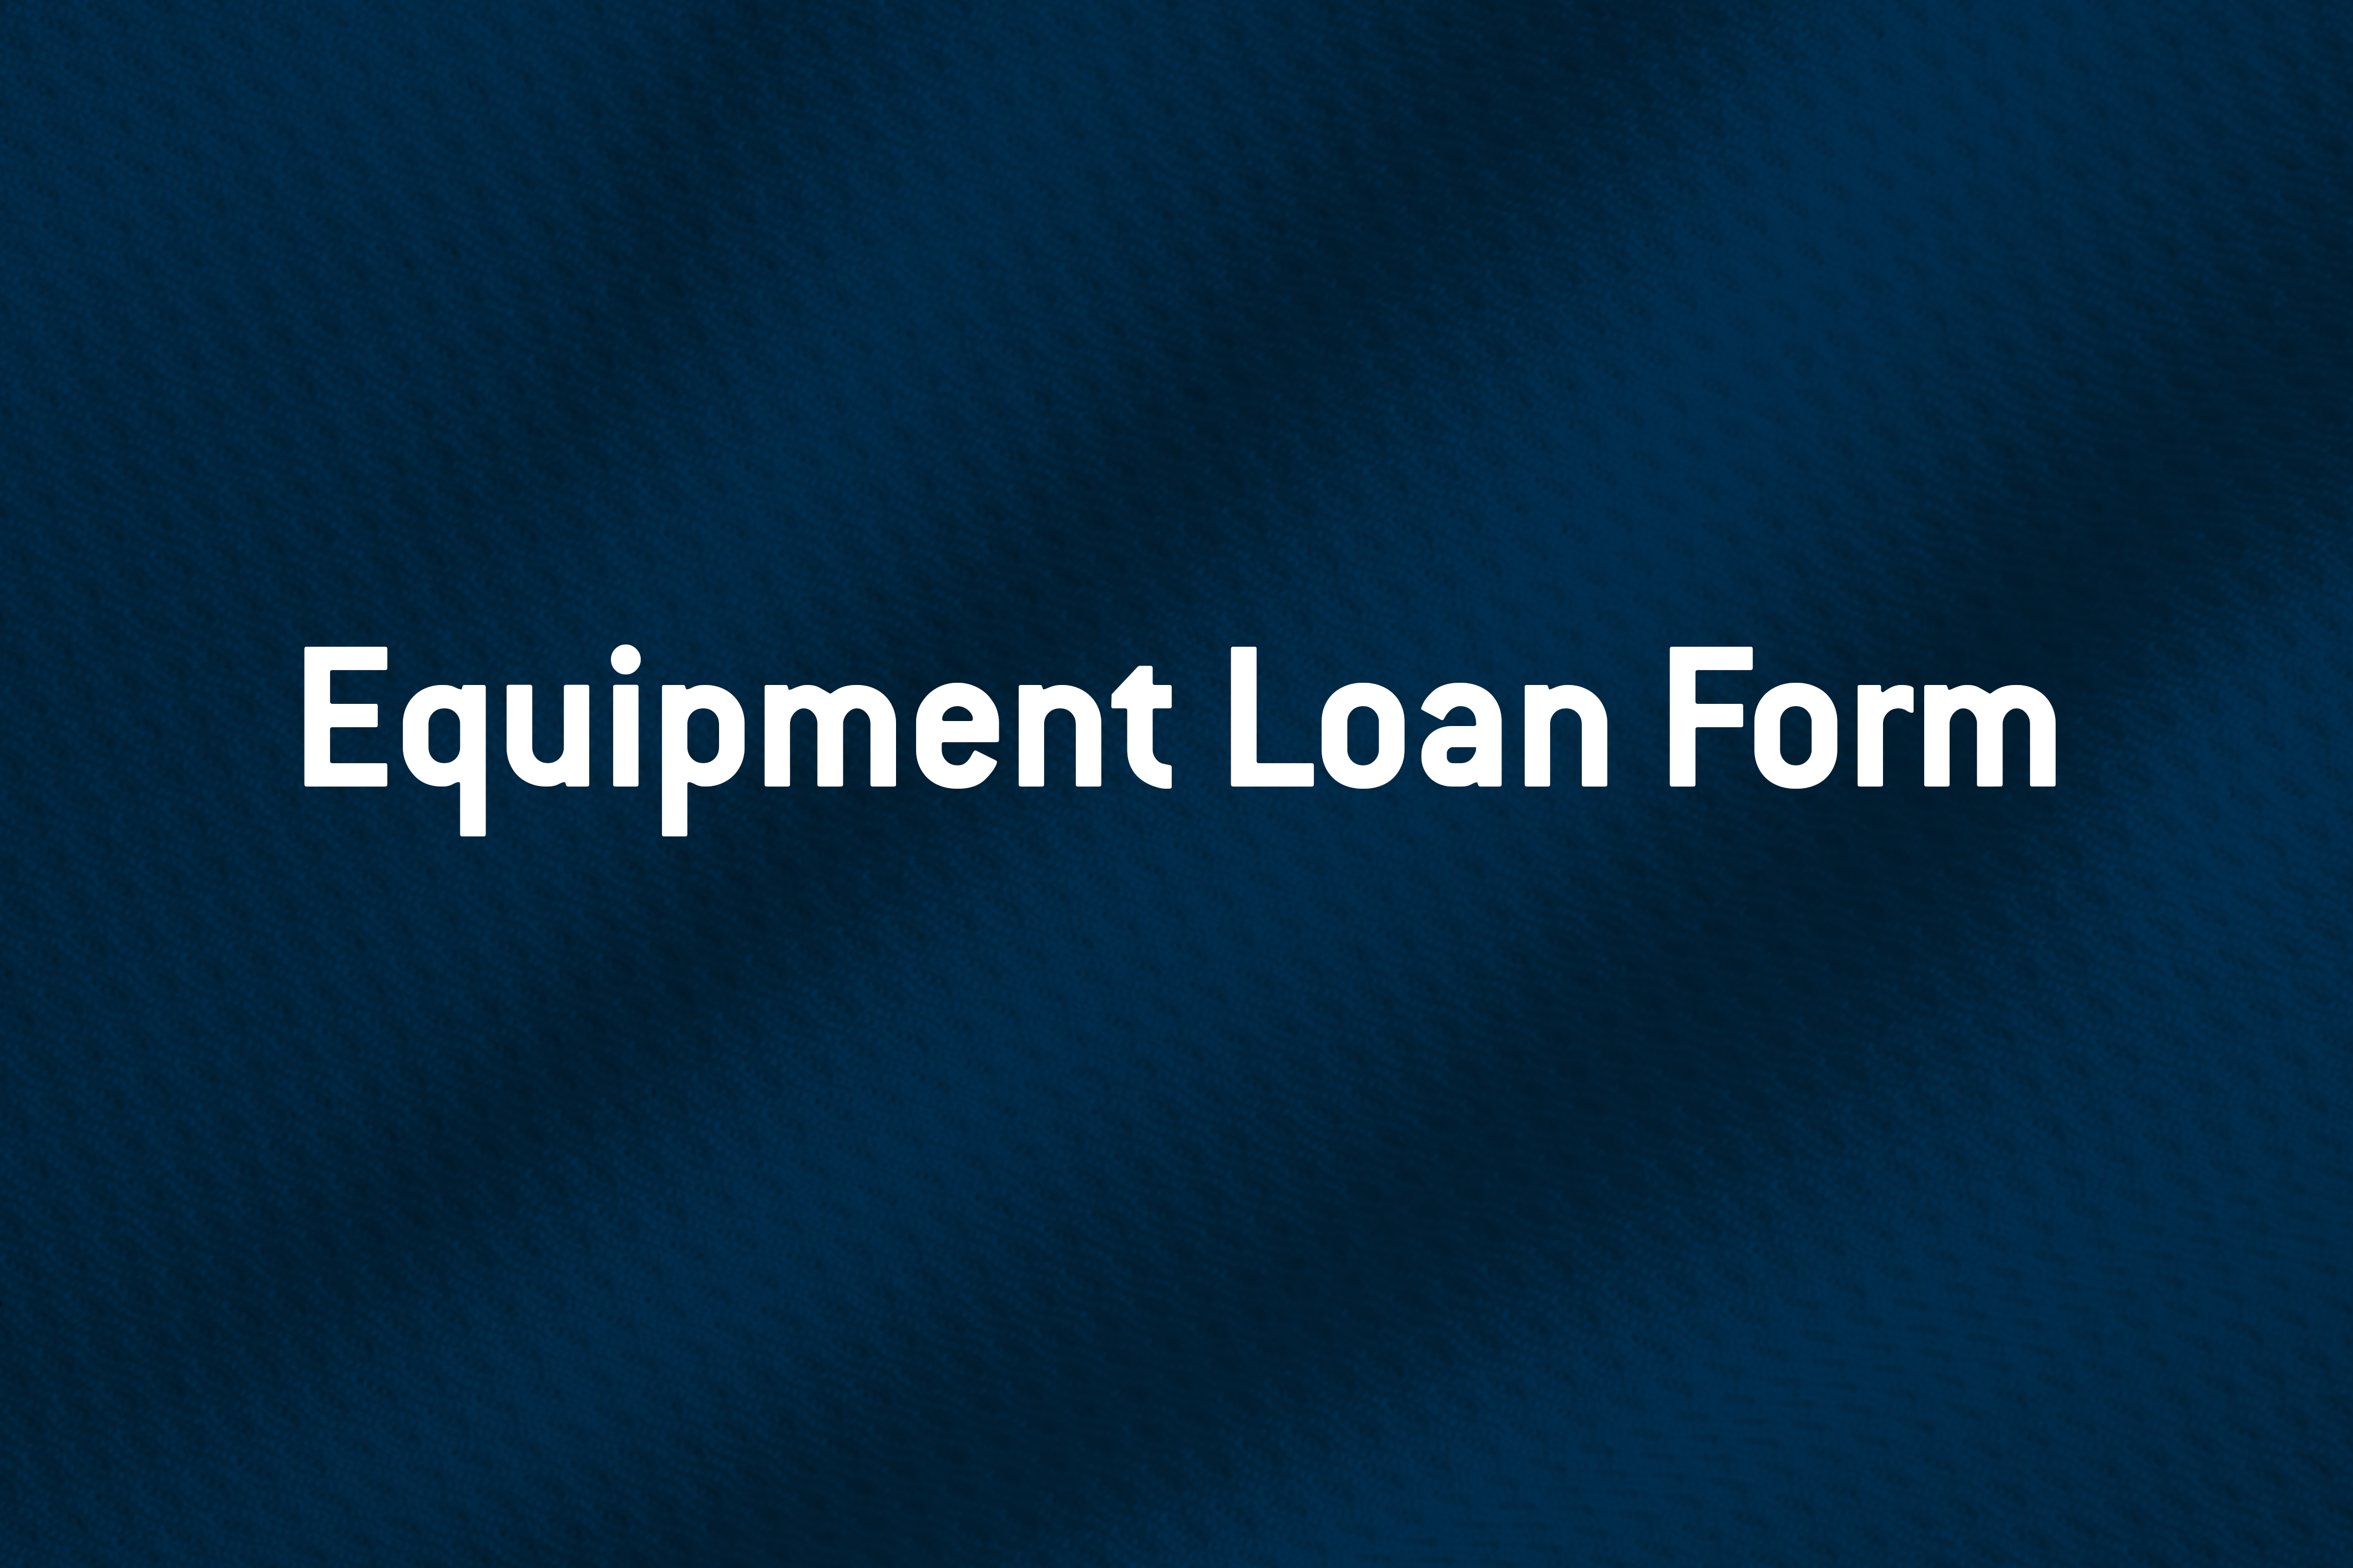 Equipment Loan Form